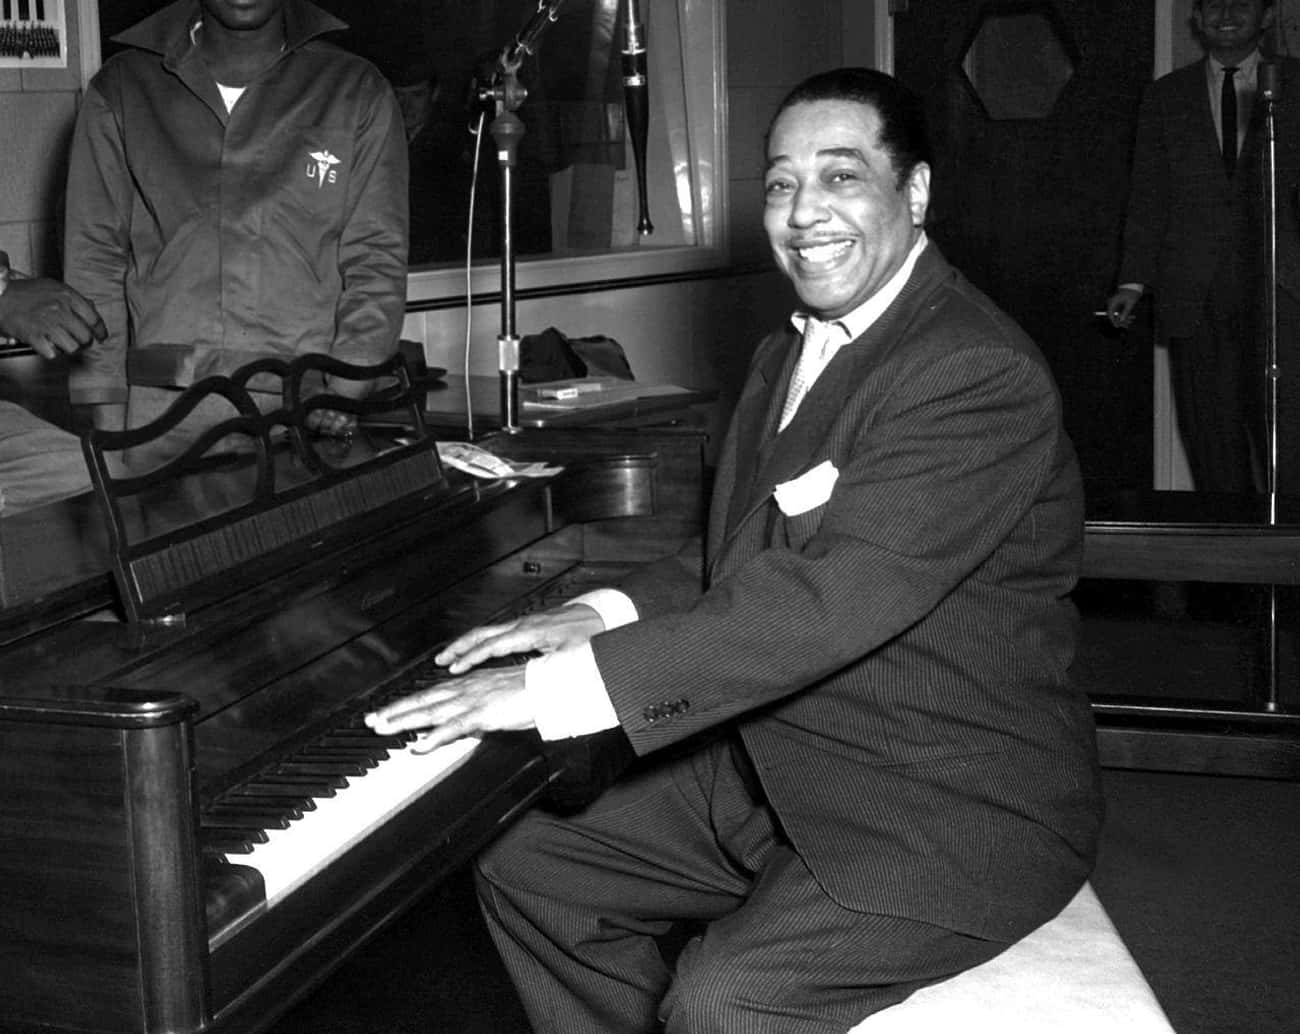 Duke Ellington's Career Was Revitalized At The 1956 Newport Jazz Festival